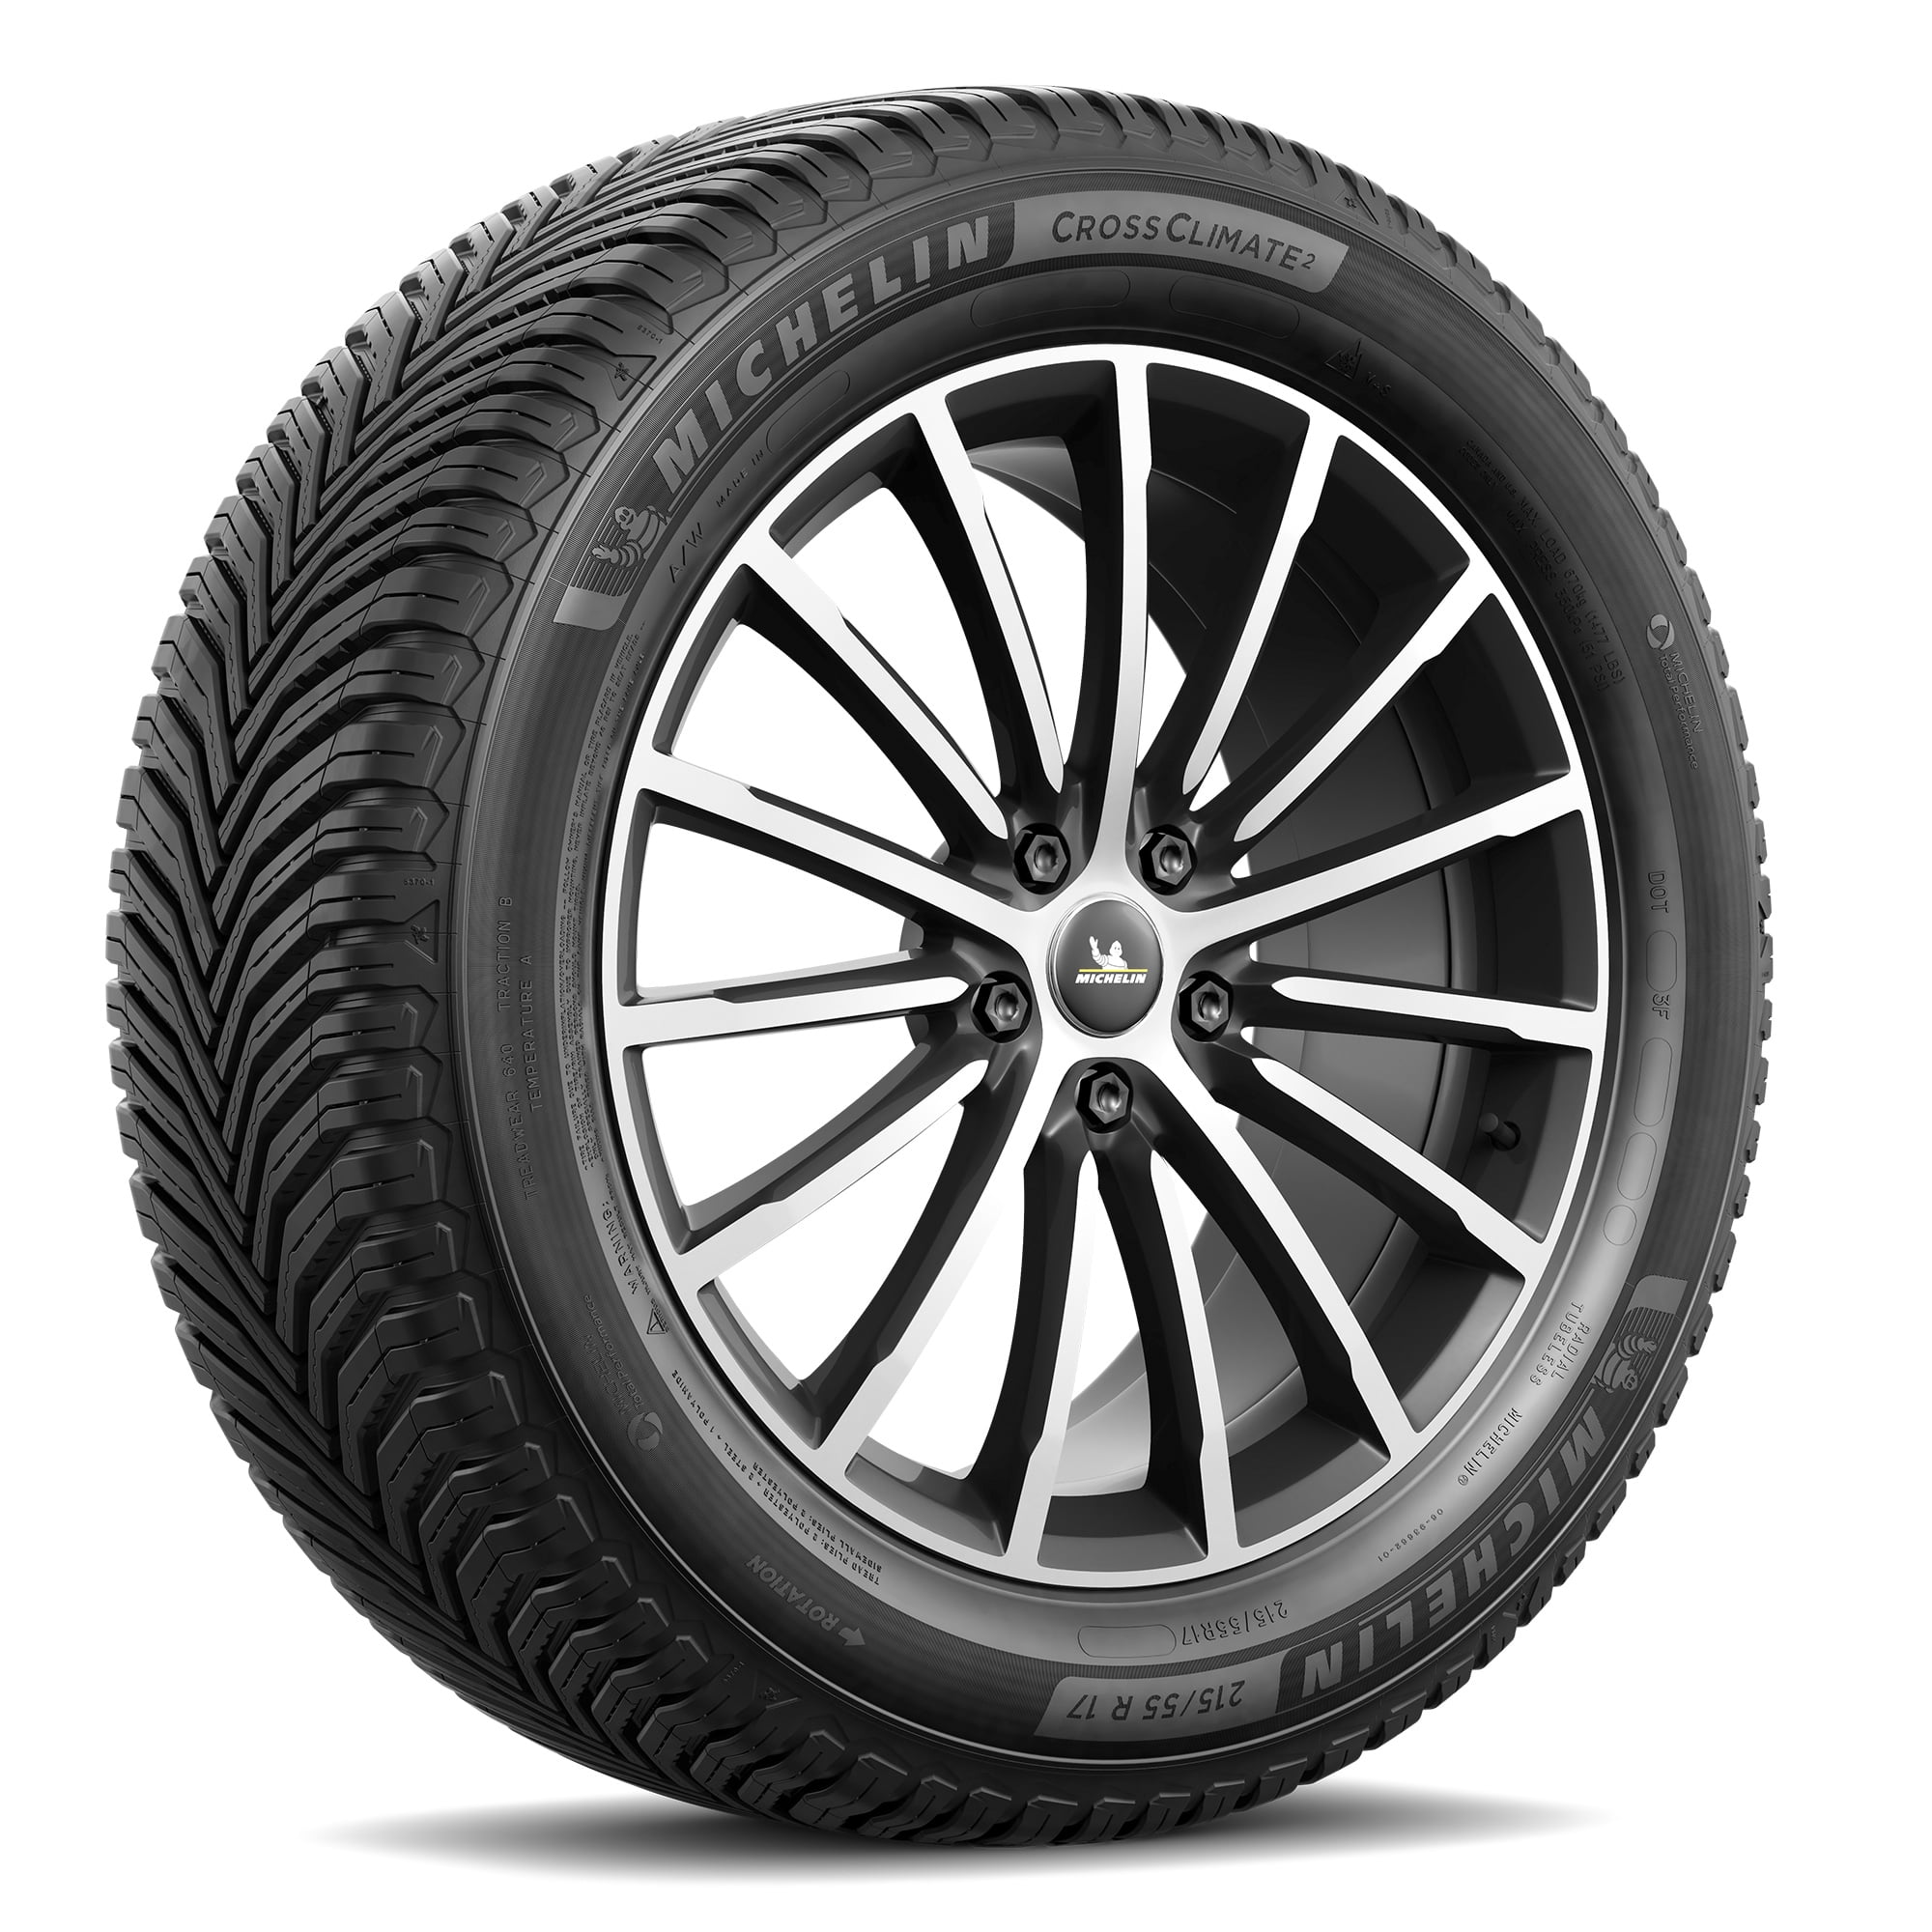 Michelin CrossClimate2 All-Season 235/55R17 99H Tire